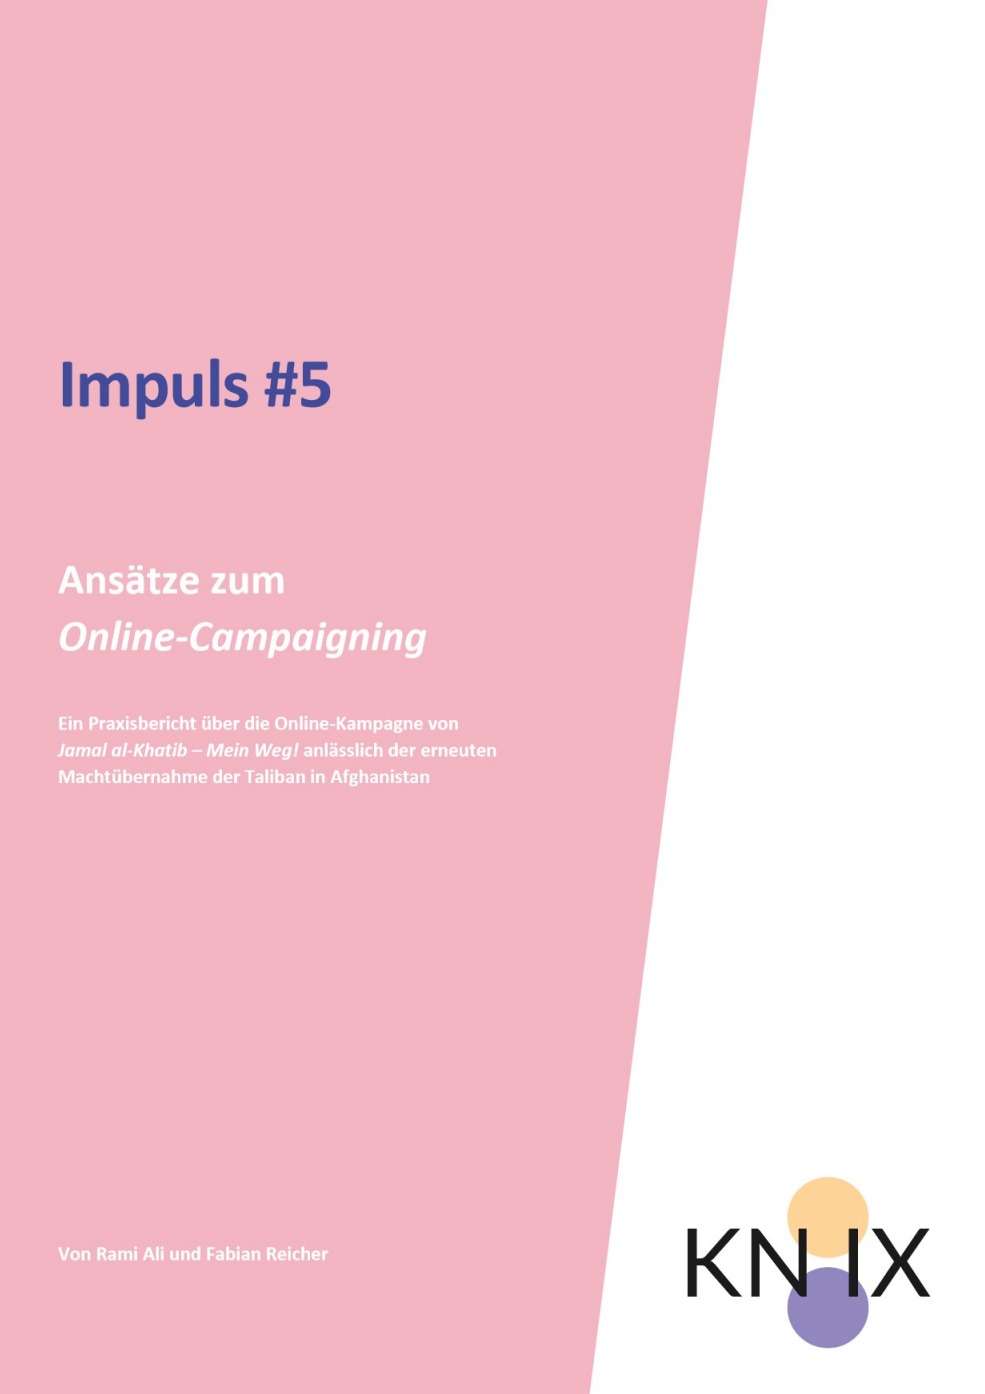 Das Cover ist in rosa gehalten und hat denTitel "Impuls #5. Ansätze zum Online-Campaigning". Im unteren Bildausschnitt ist das Logo KN:IX zu sehen.